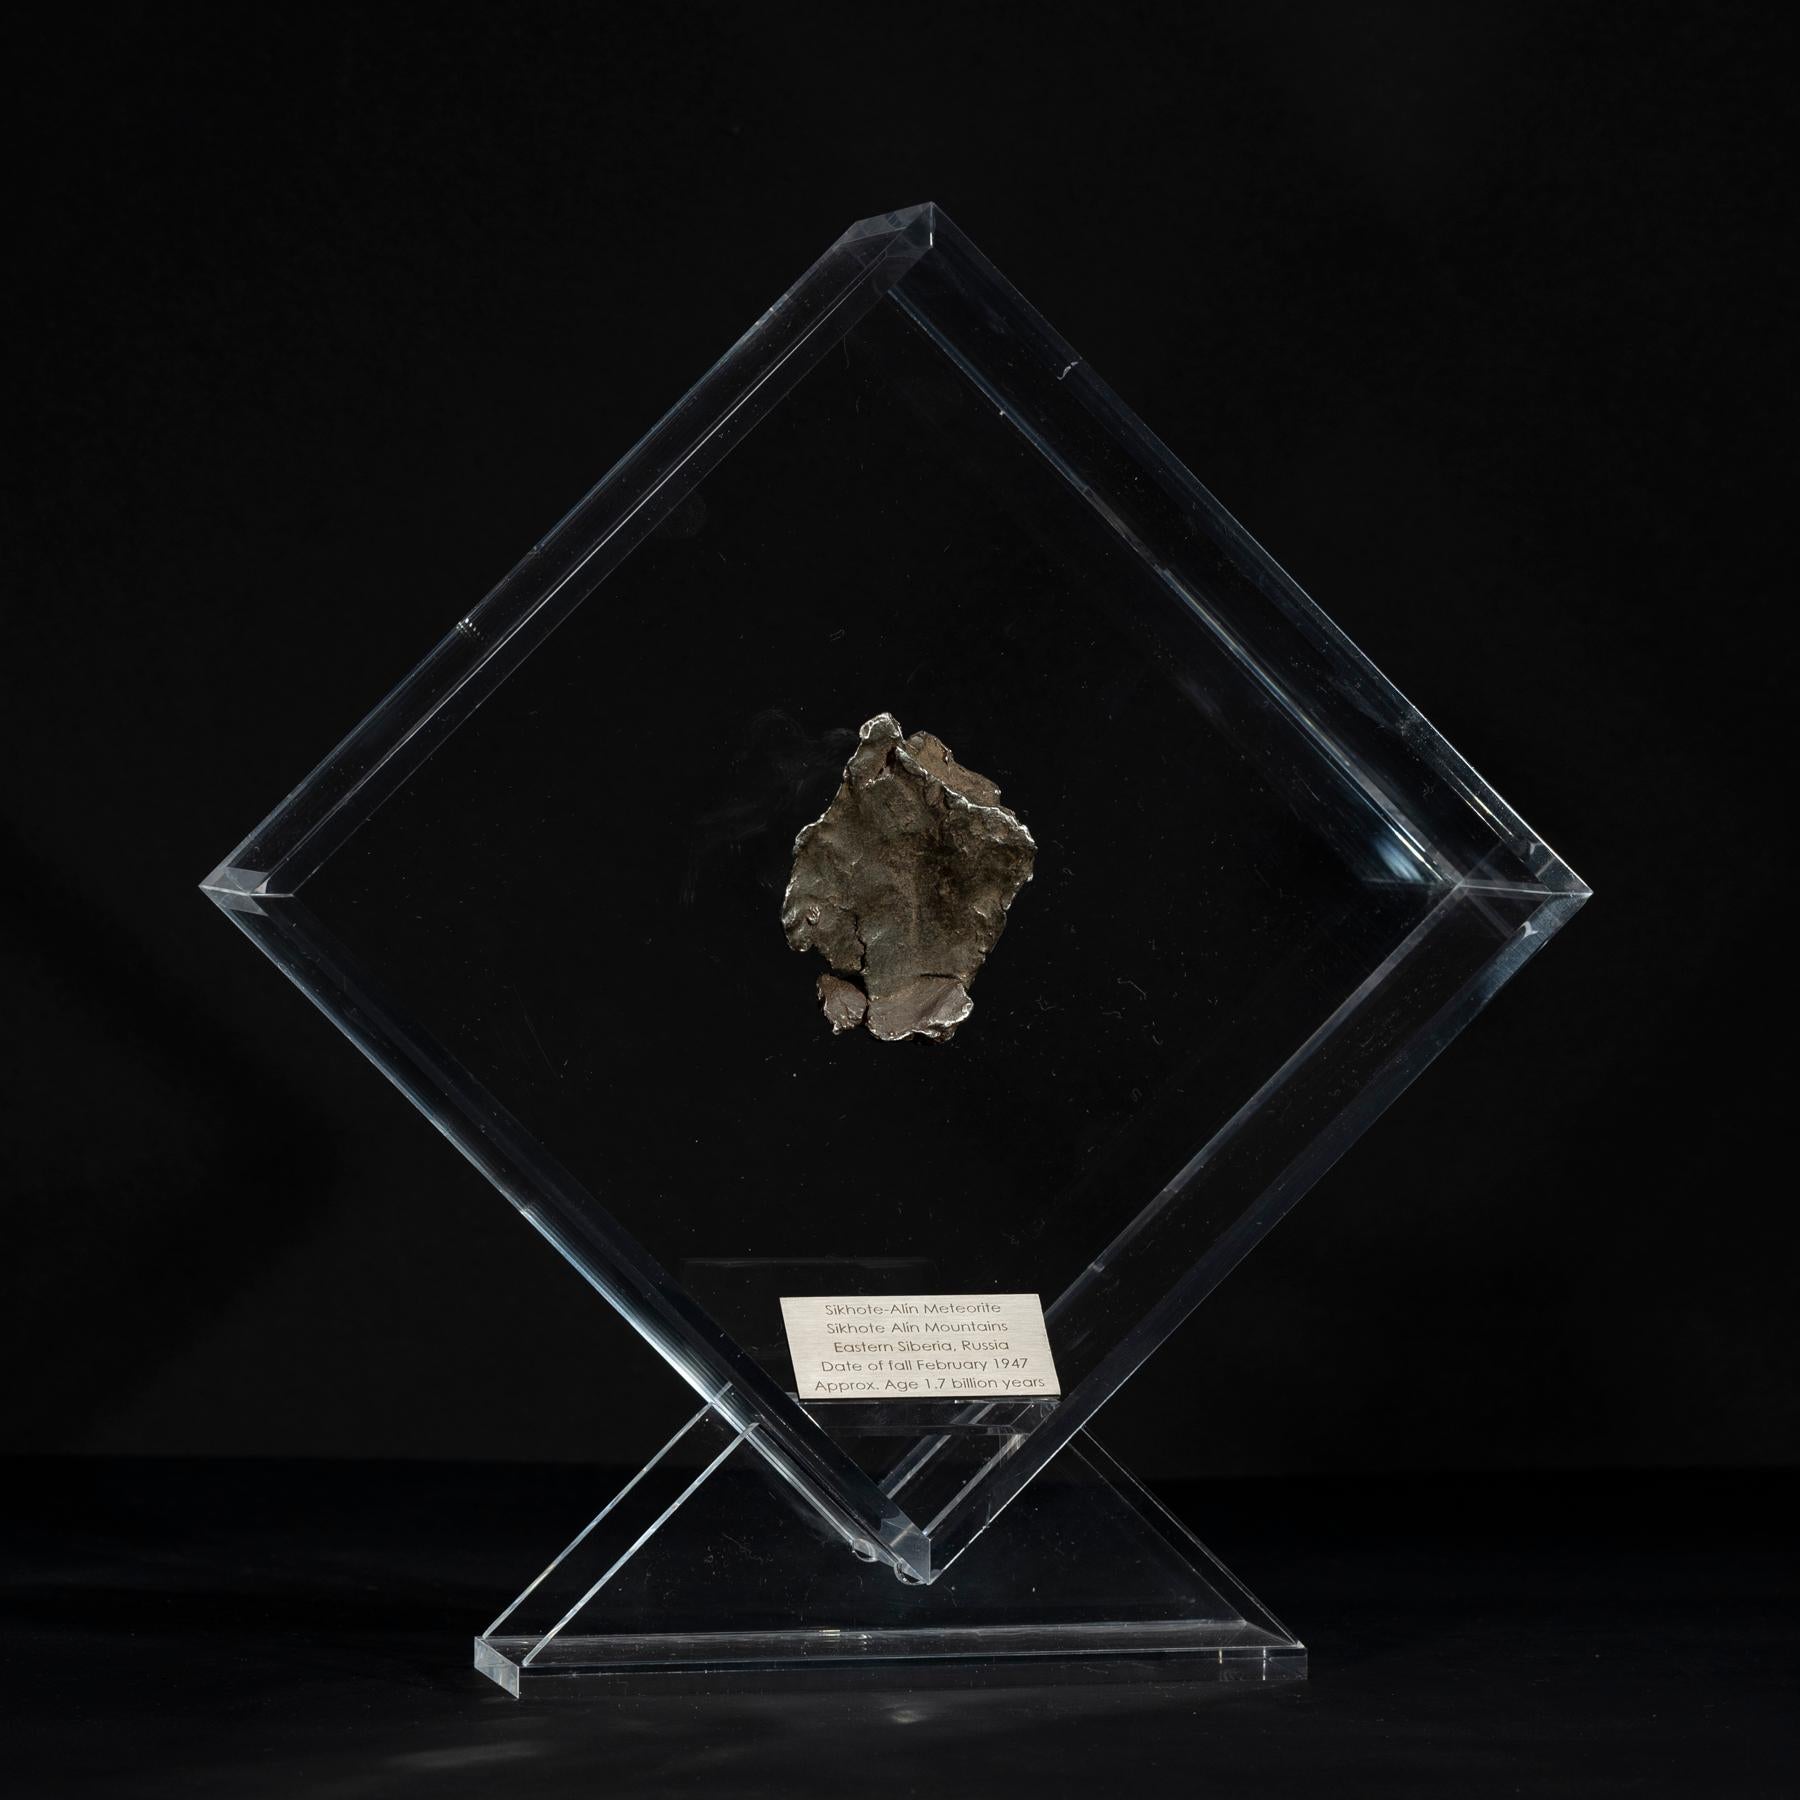 Mexicain Sikhote Alin Meteorite de Sibérie, Russie, exposé sur mesure en acrylique en vente